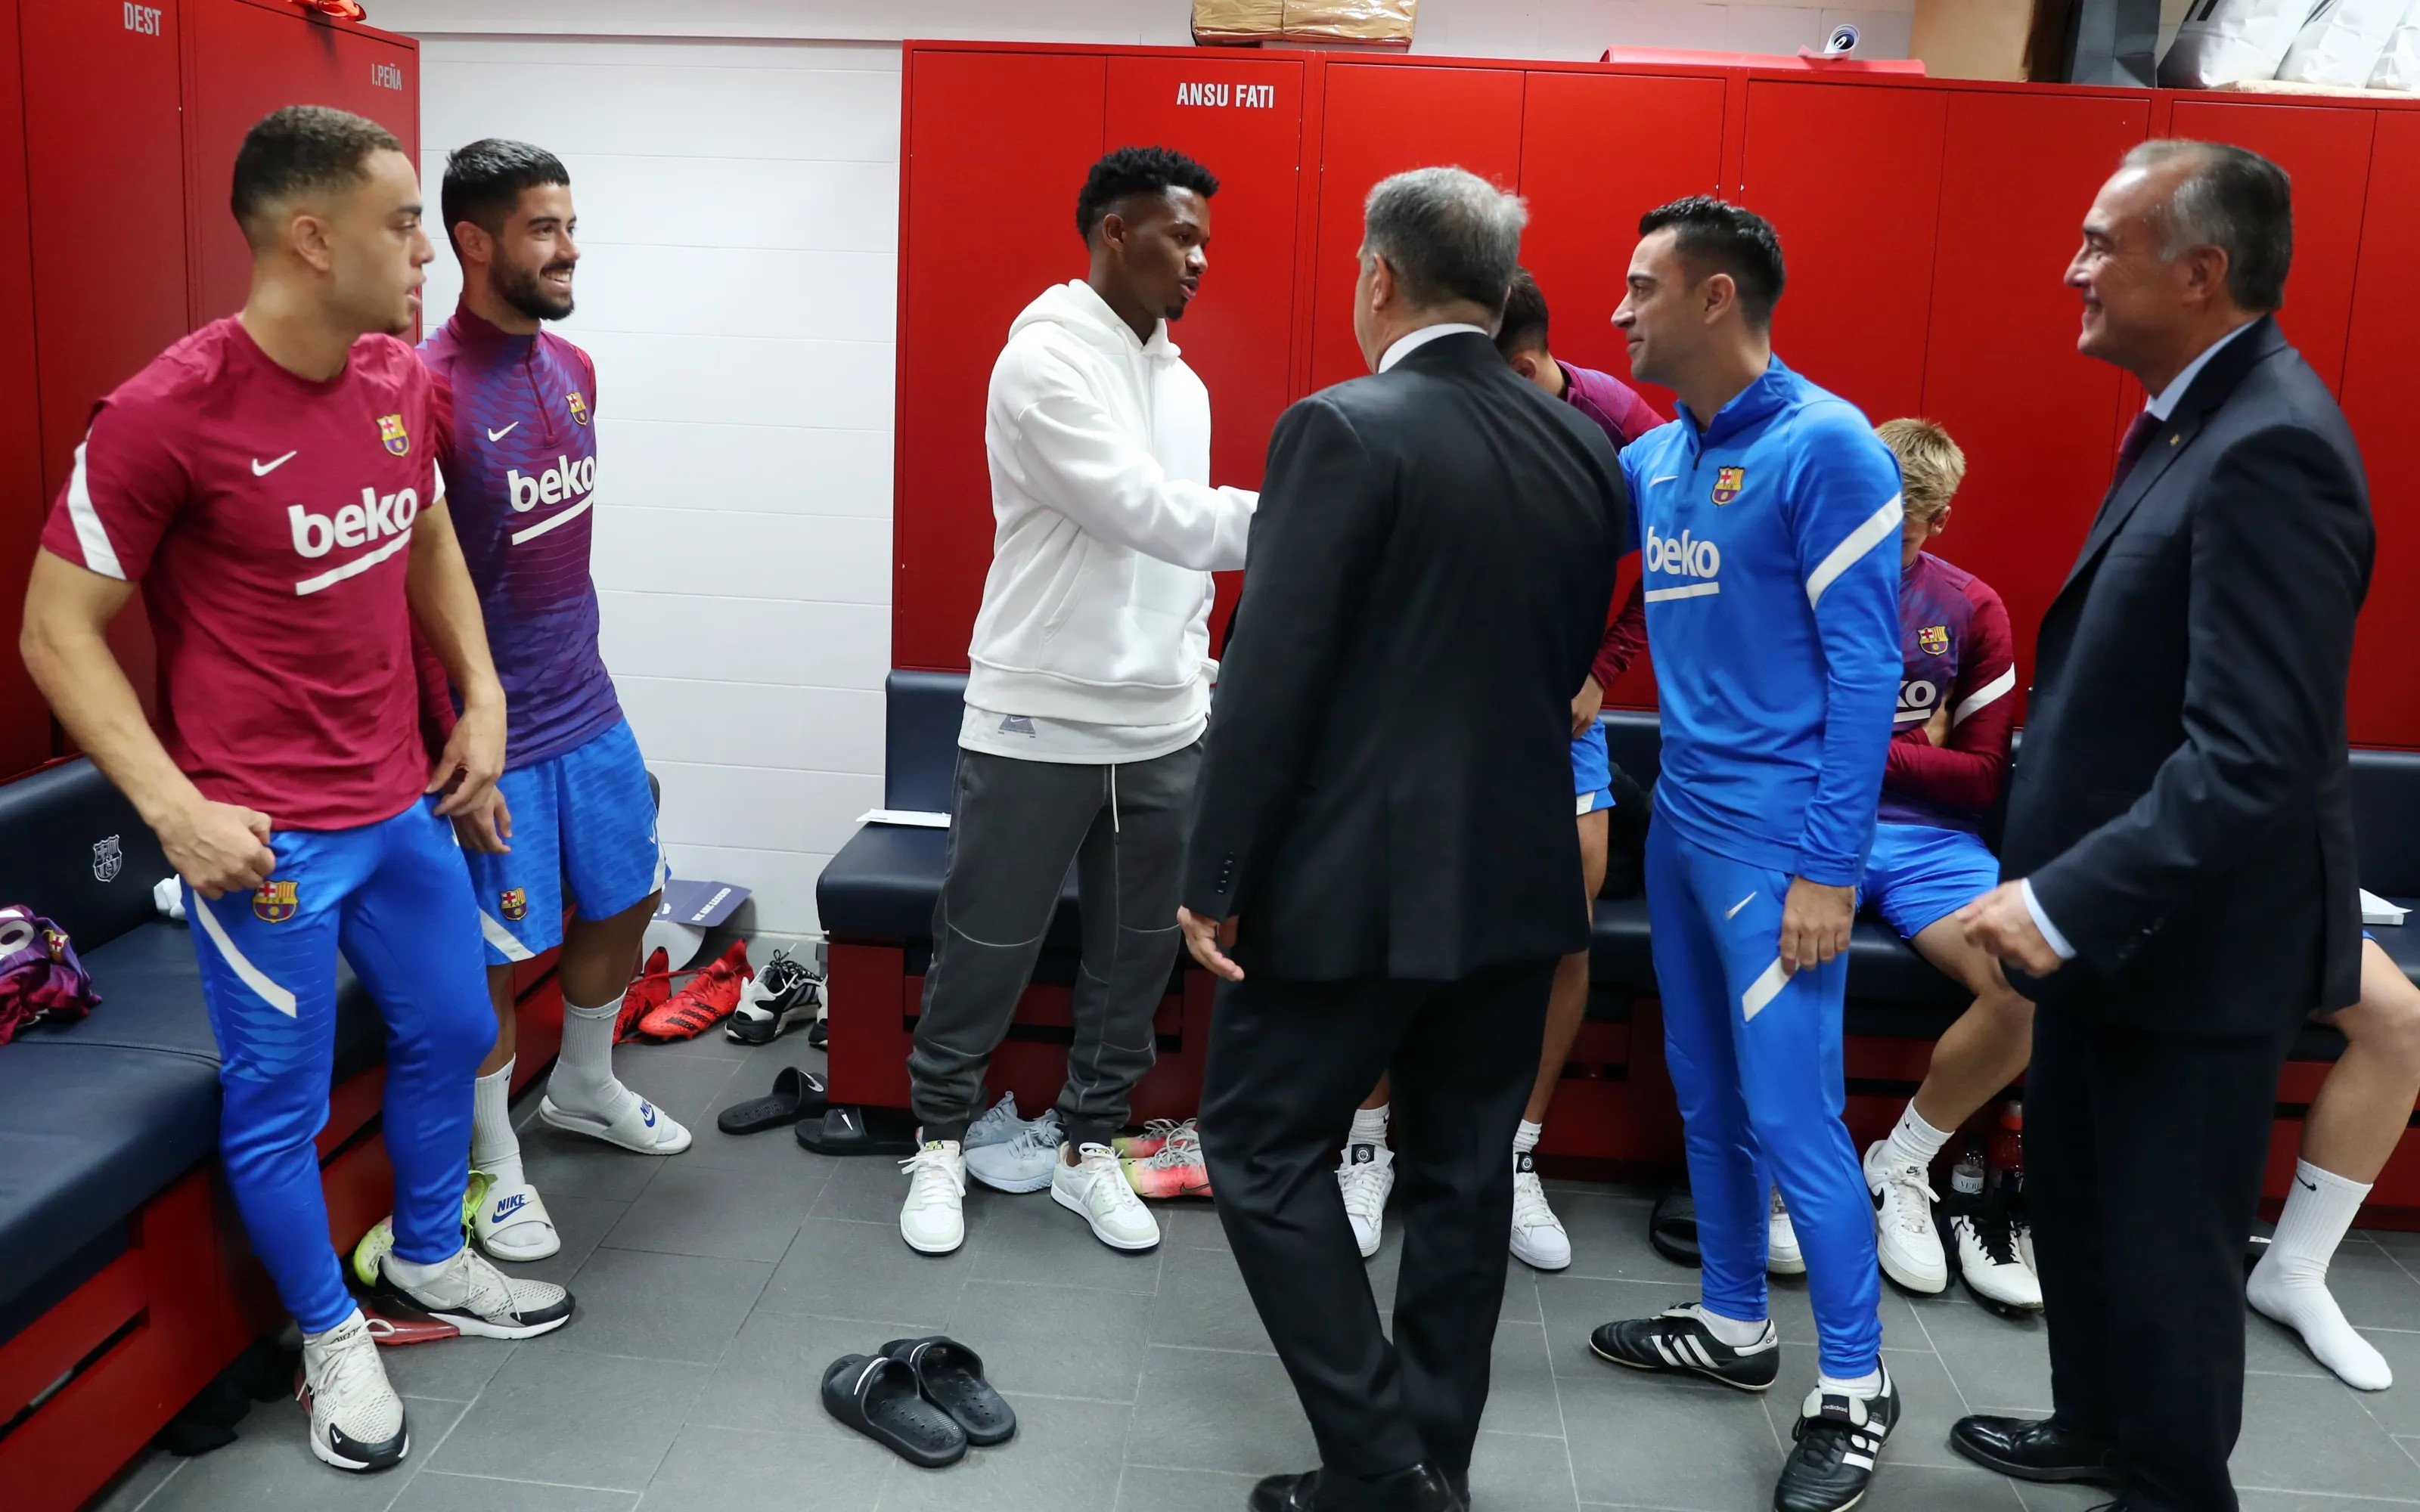 Ansu Fati y Xavi Hernández, relaciones rotas, pregunta al banquillo del Barça: "¿He sido el peor?"